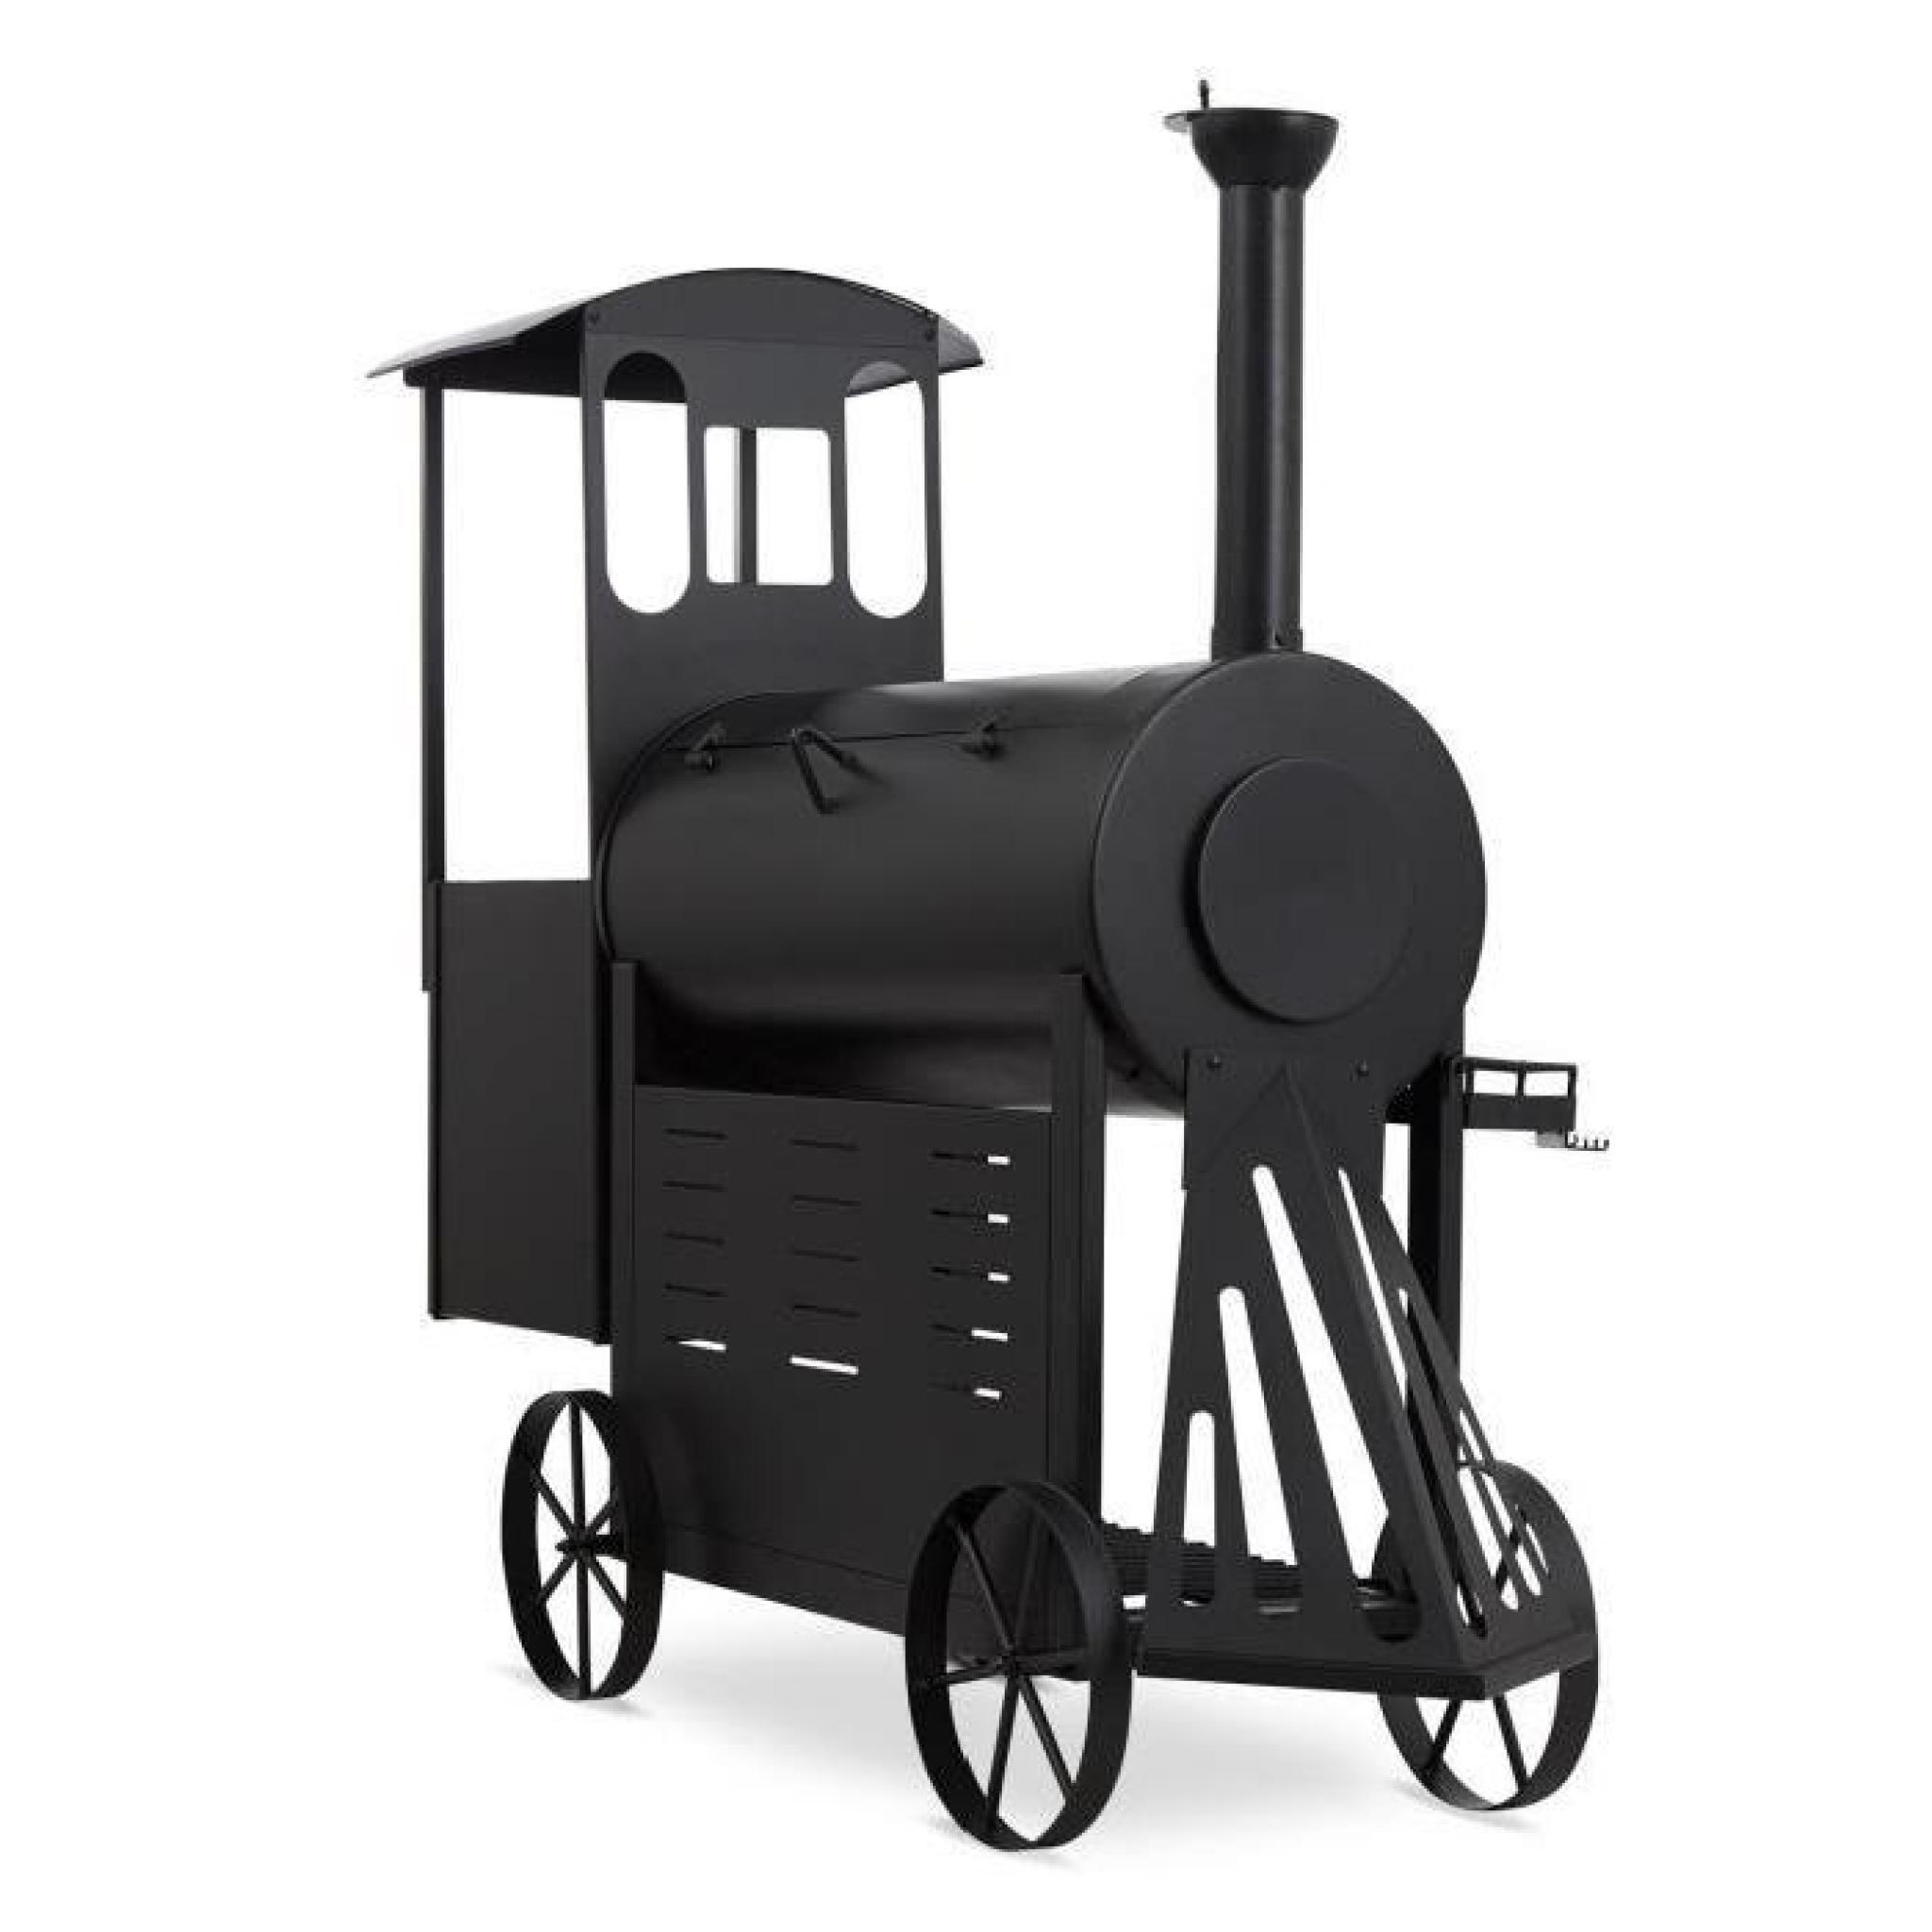 Klarstein Dampflok Smoker Grill à charbon fumoir sur roues style locomotive western - cuve acier 3mm pas cher